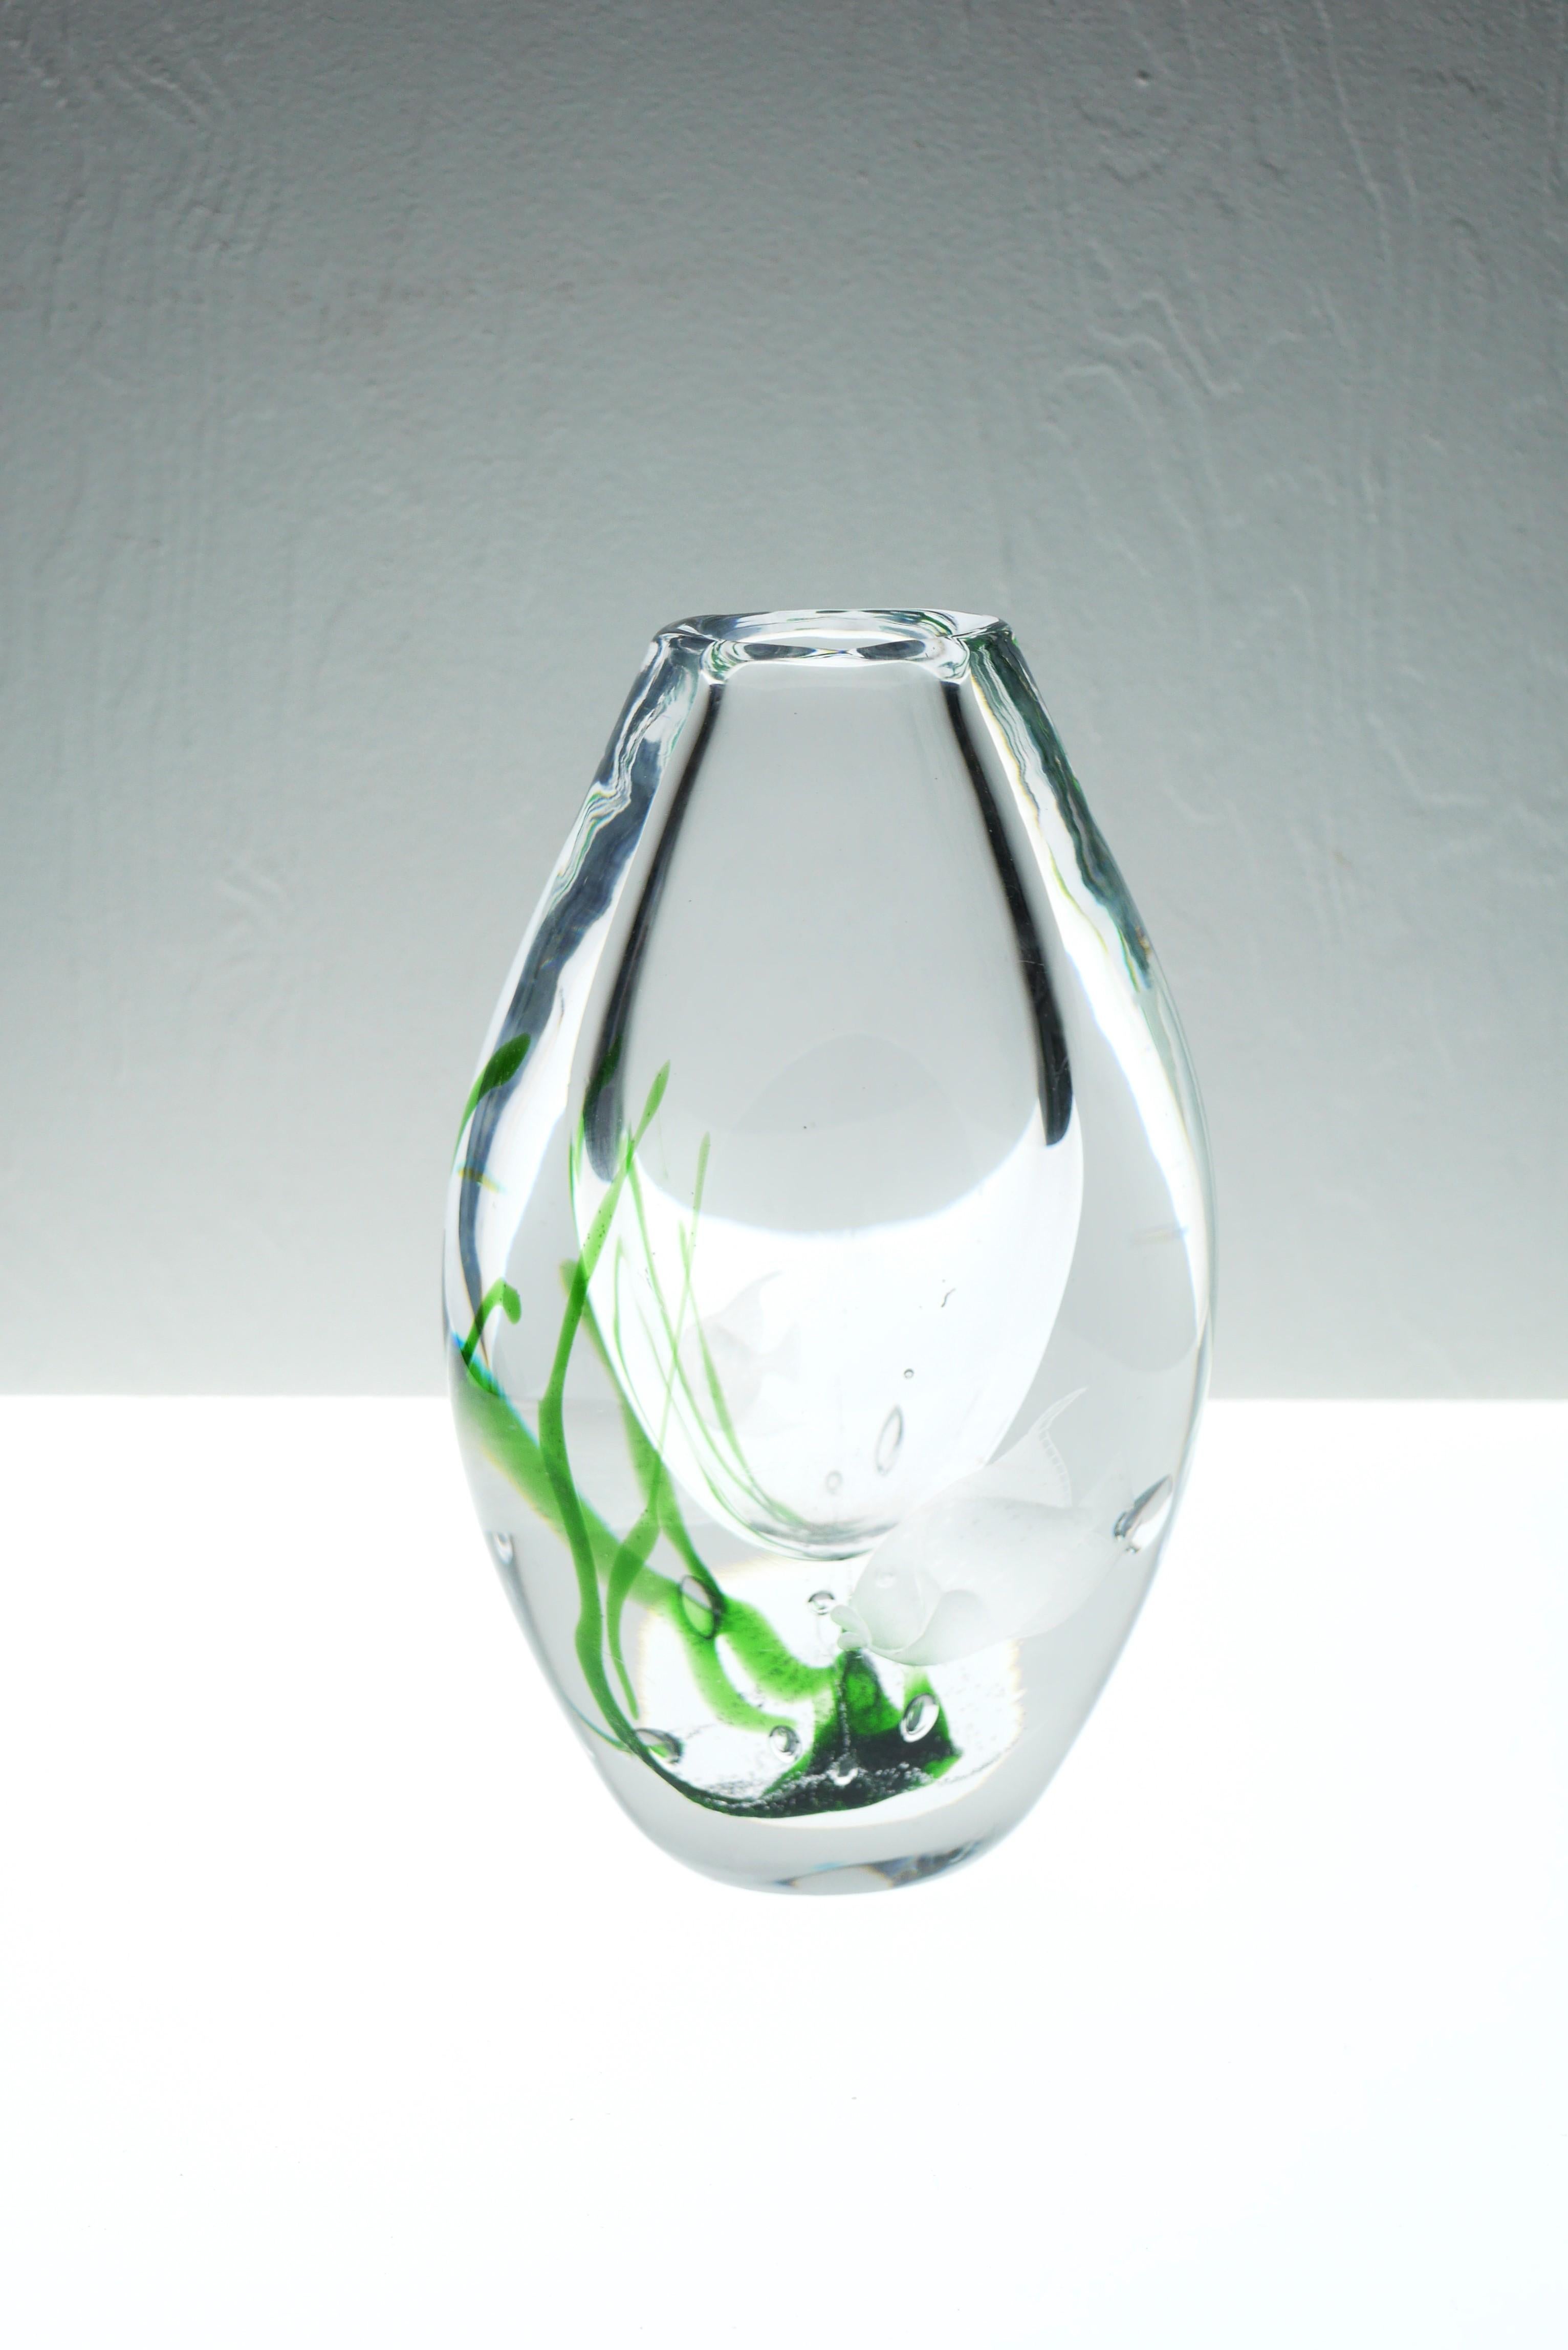 Un extraordinaire vase en verre vintage signé, soufflé à la main, connu sous le nom de 